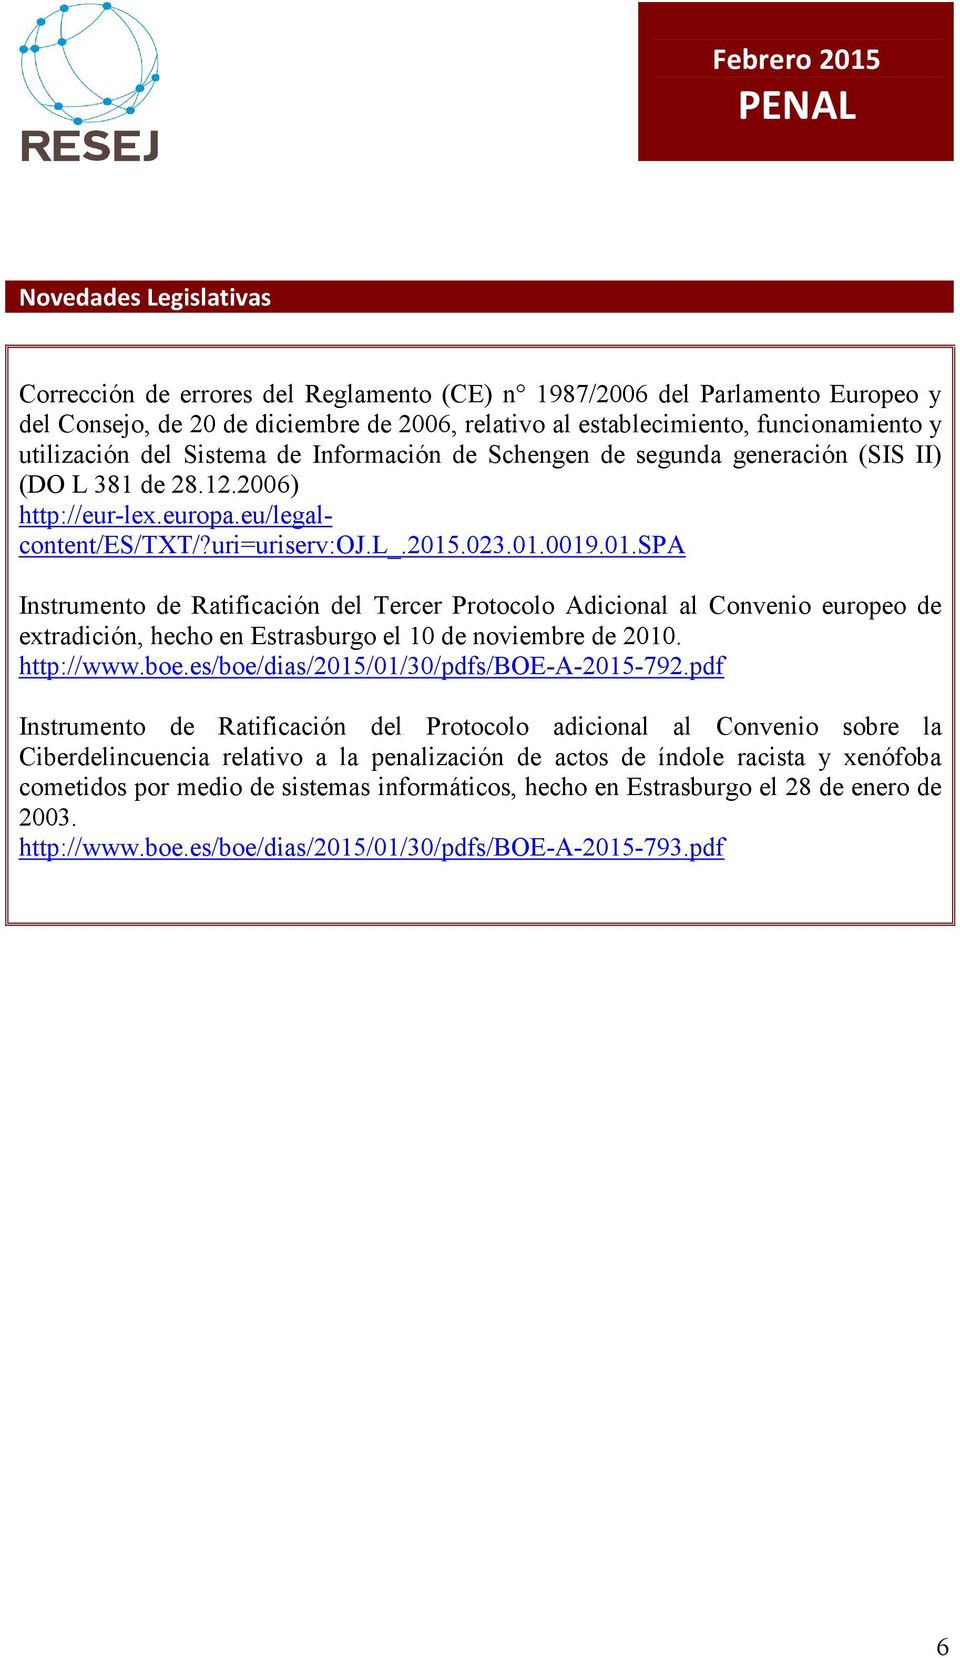 .023.01.0019.01.spa Instrumento de Ratificación del Tercer Protocolo Adicional al Convenio europeo de extradición, hecho en Estrasburgo el 10 de noviembre de 2010. http://www.boe.